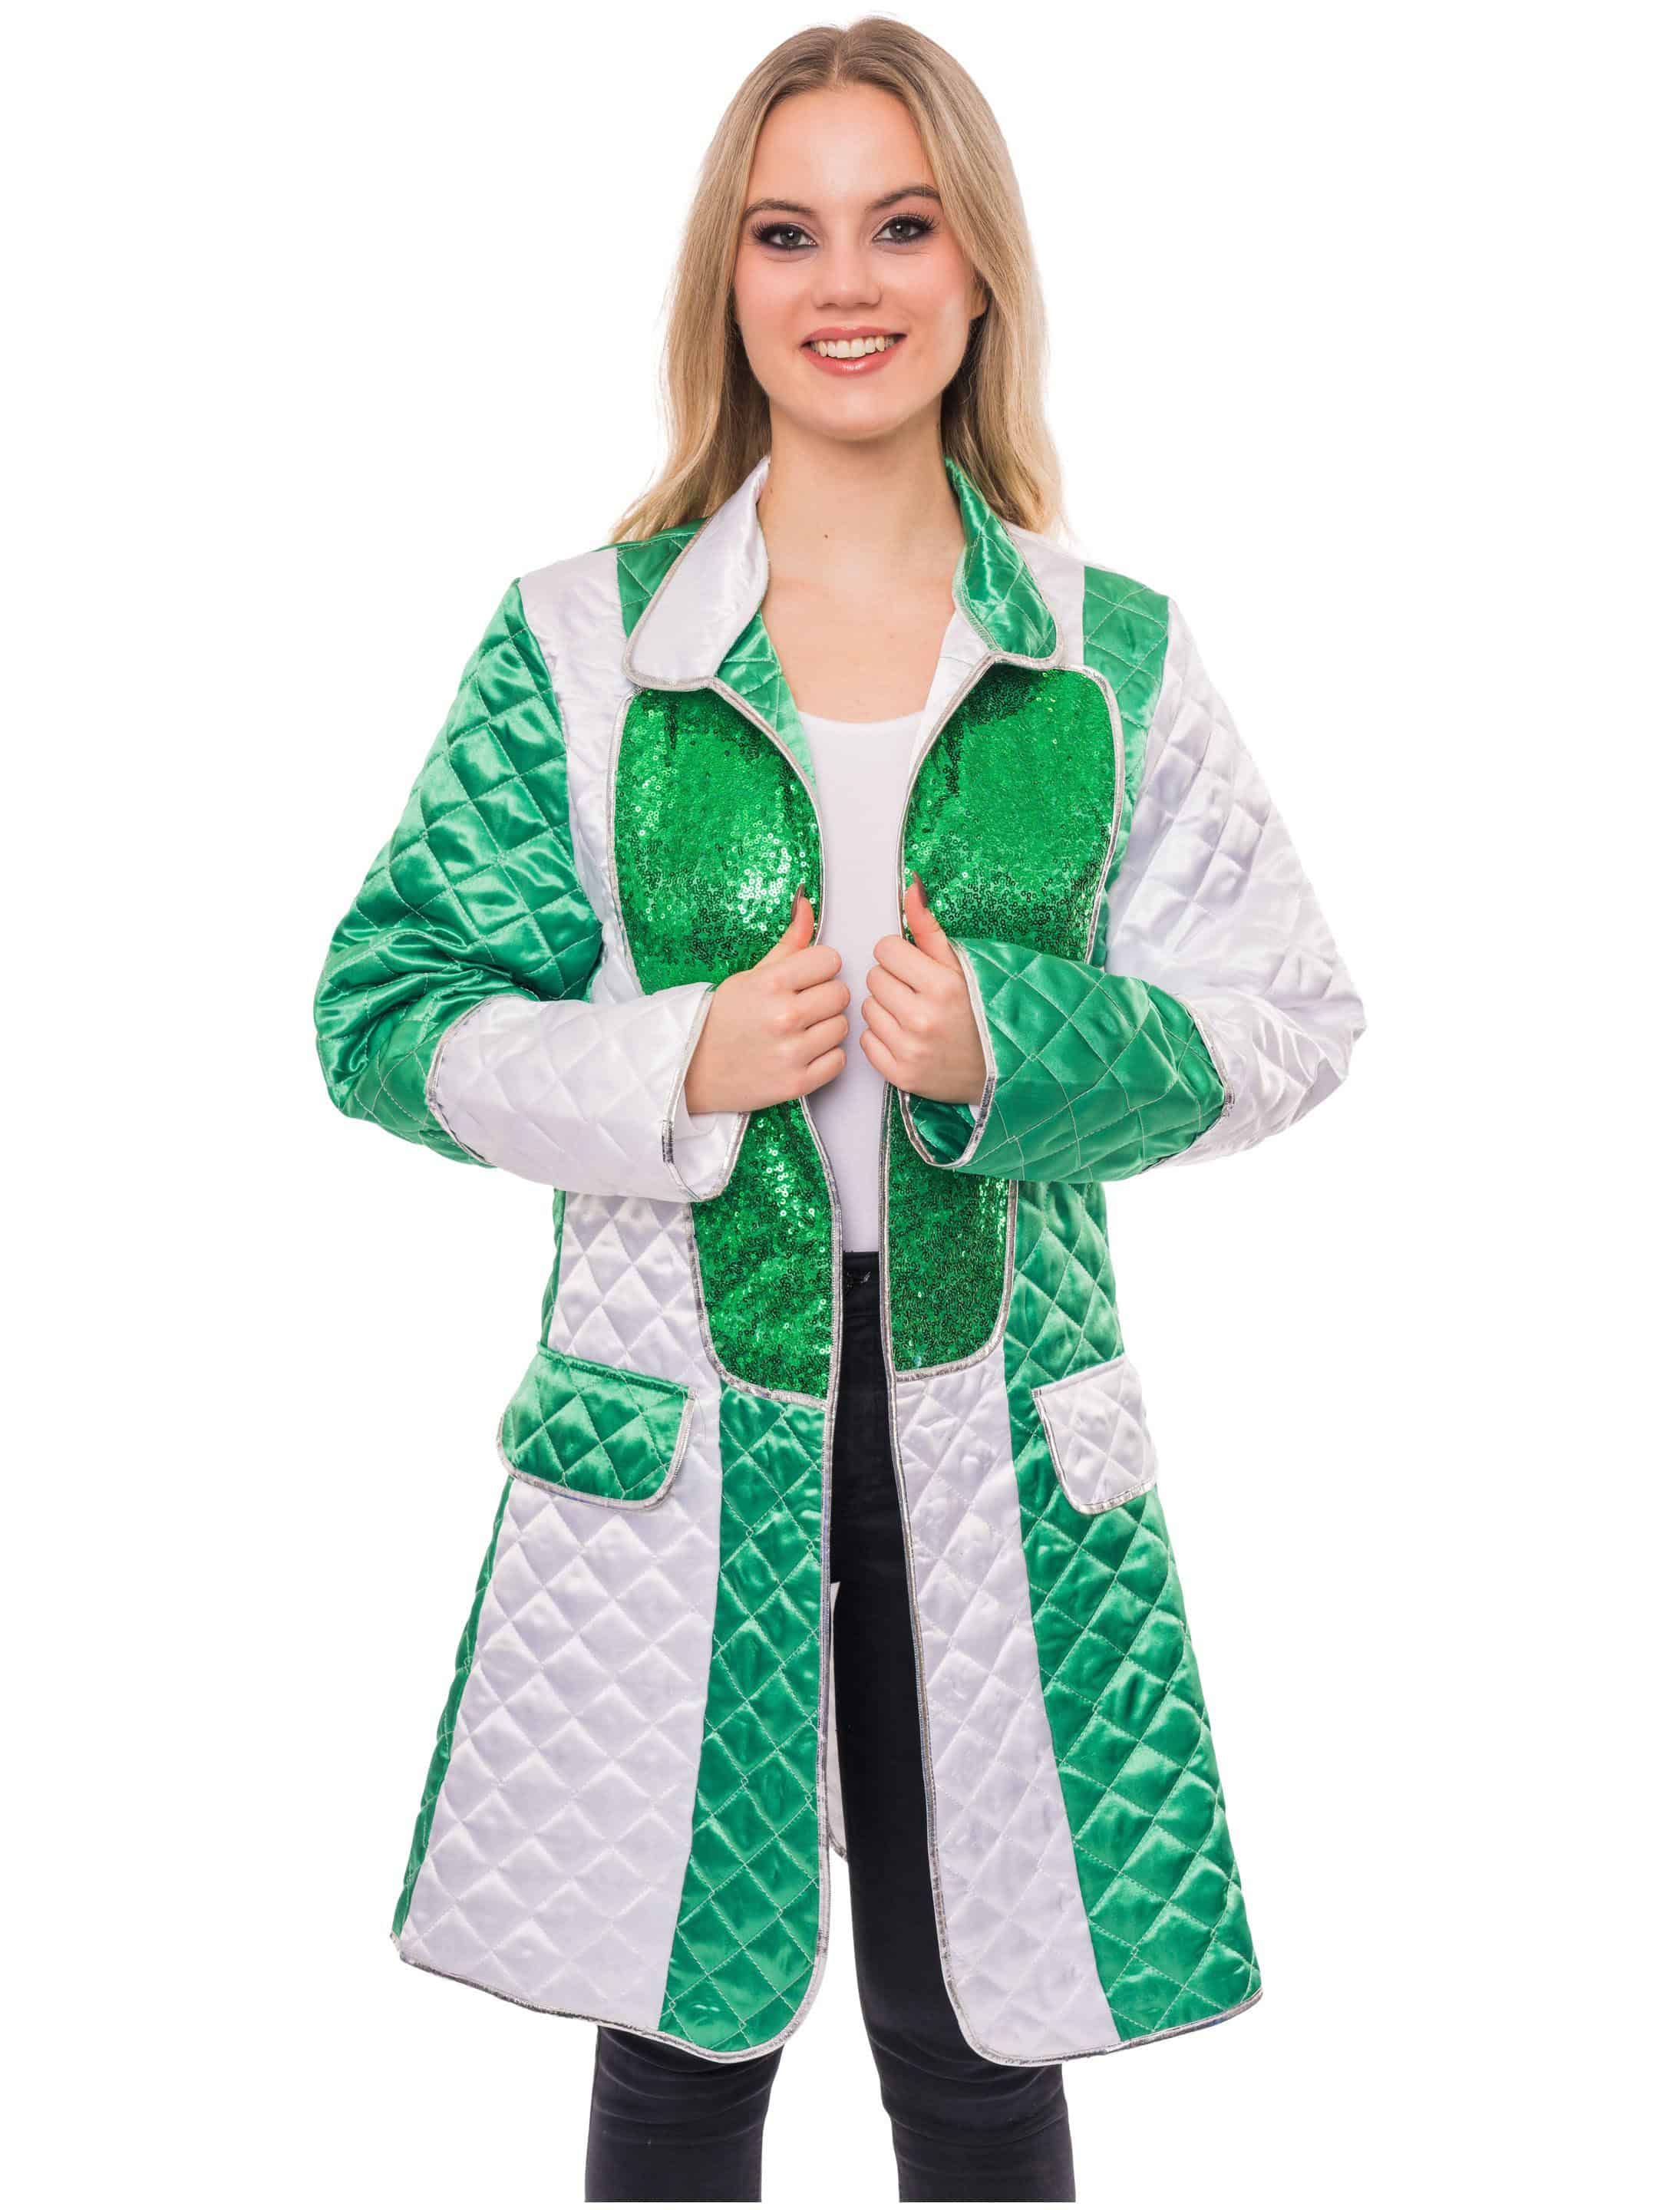 Mantel gesteppt Damen grün/weiß S